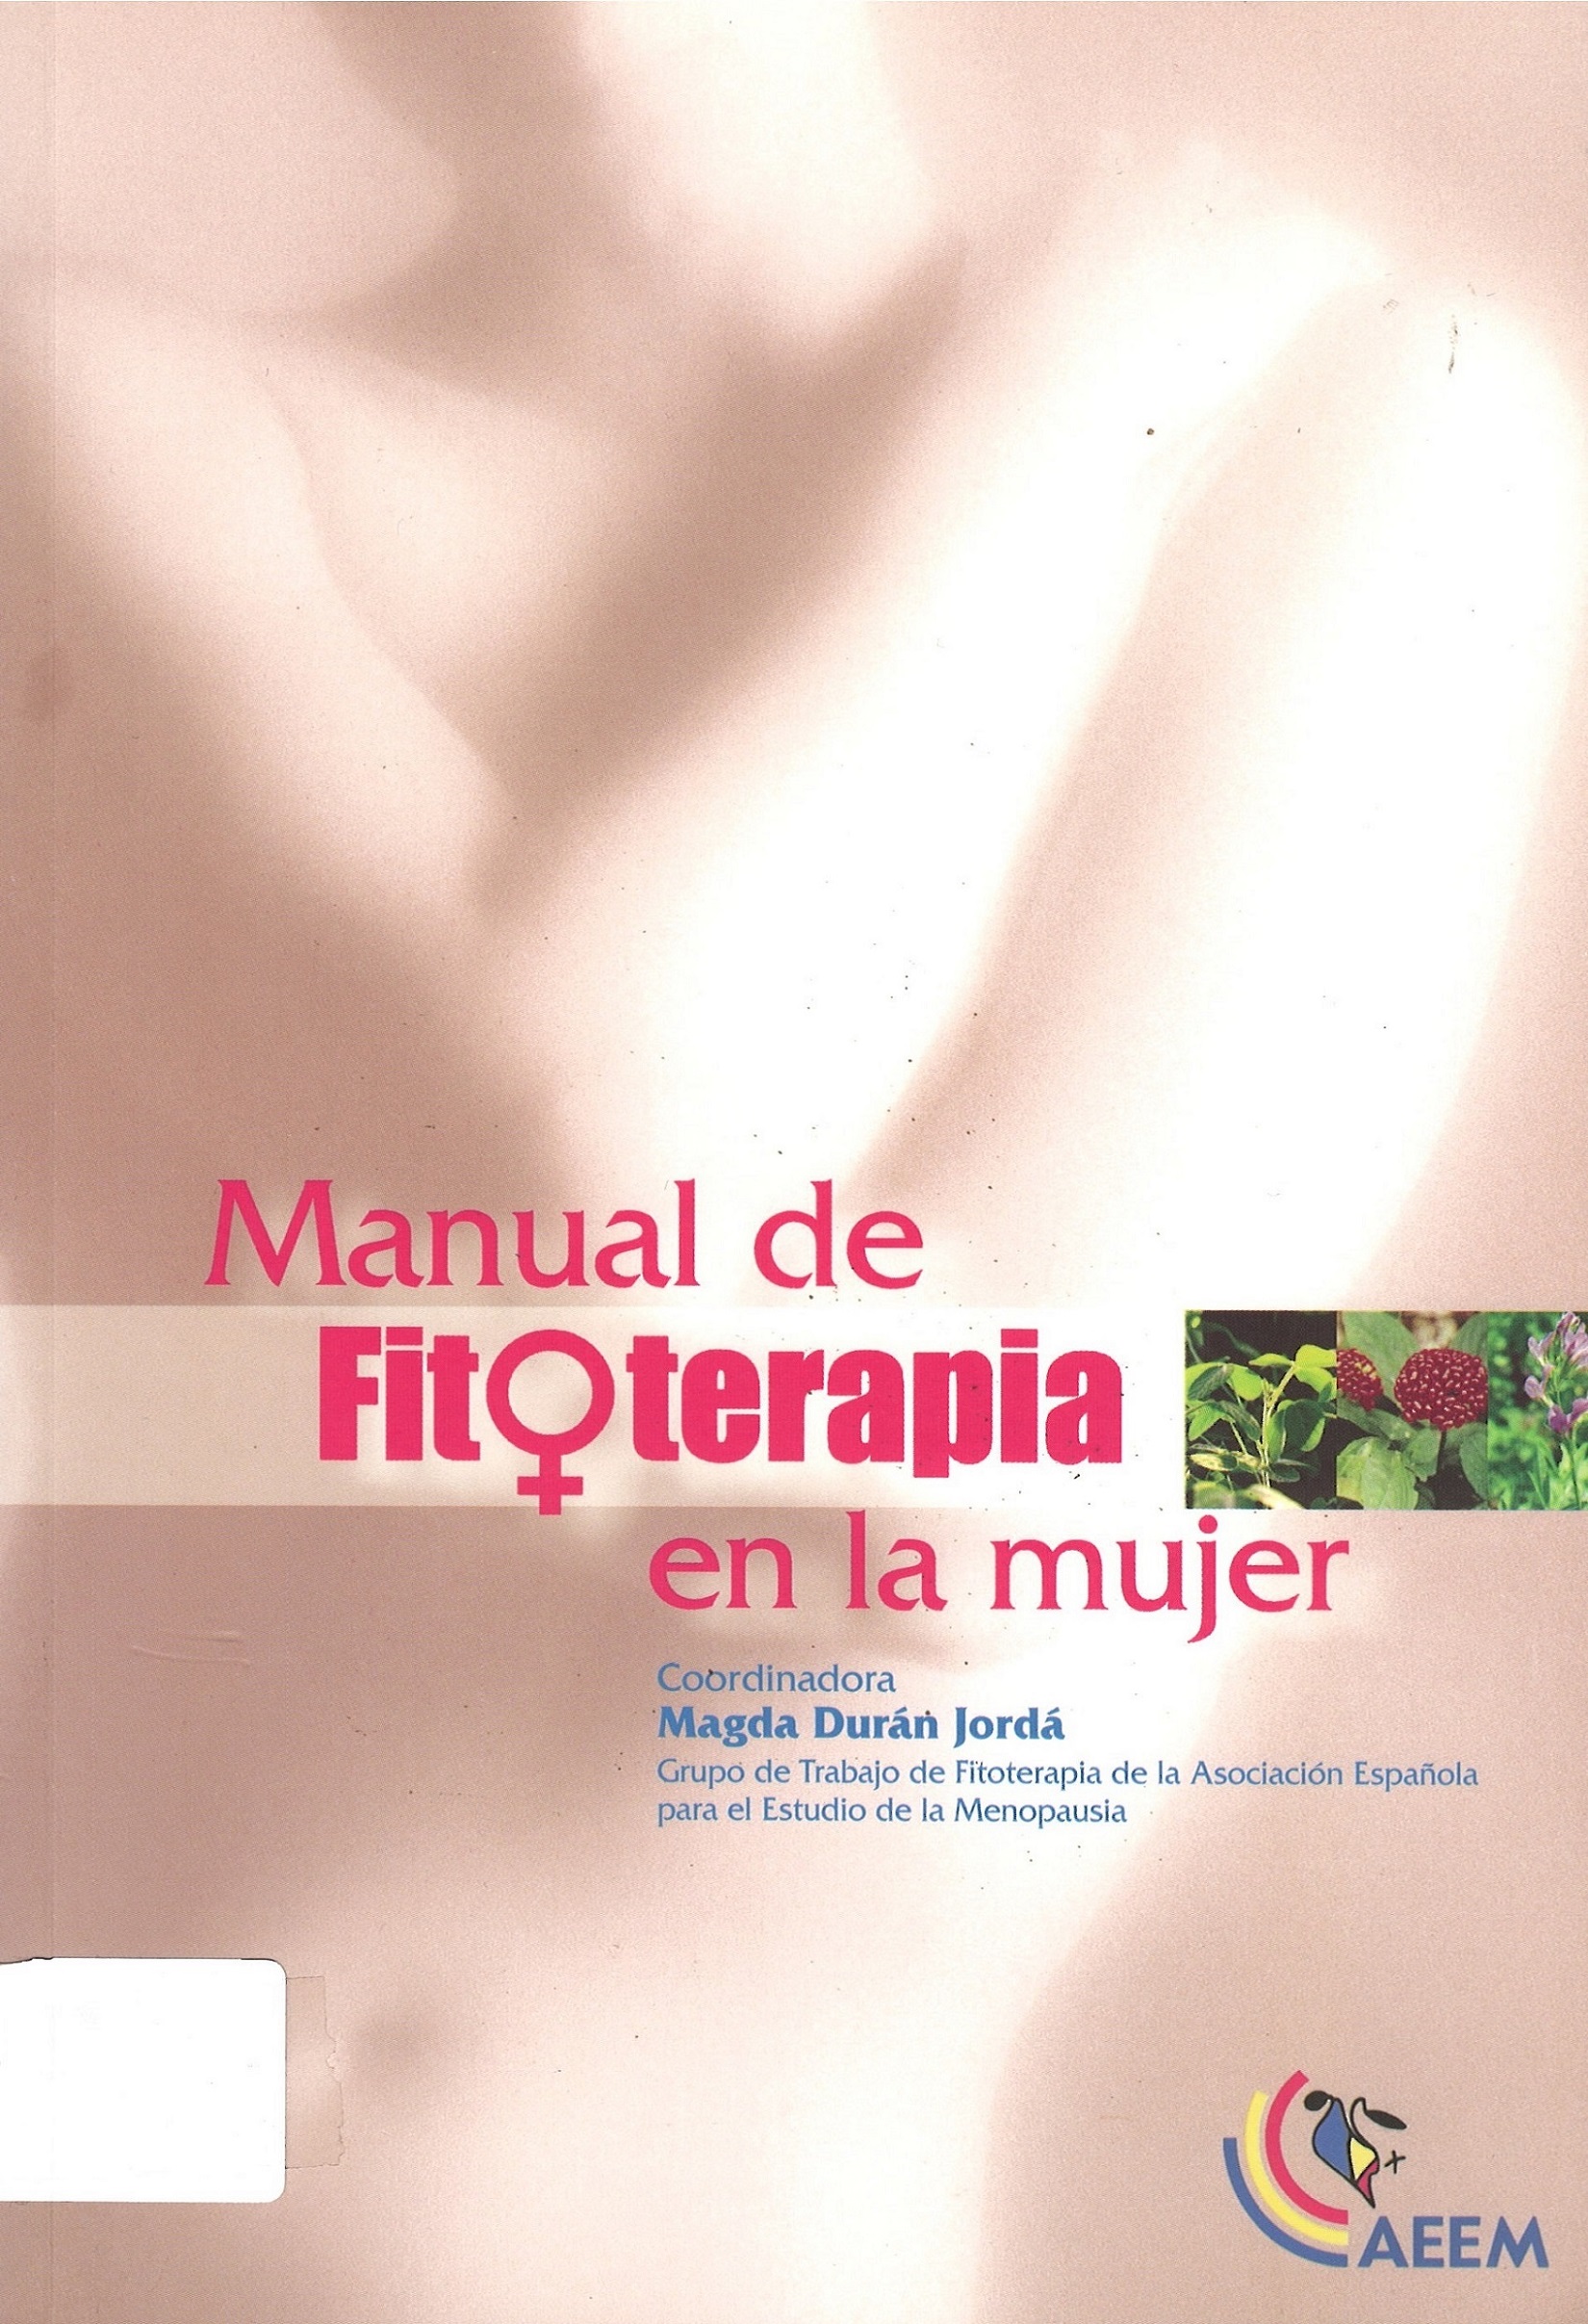 Imagen de portada del libro Manual de fitoterapia en la mujer